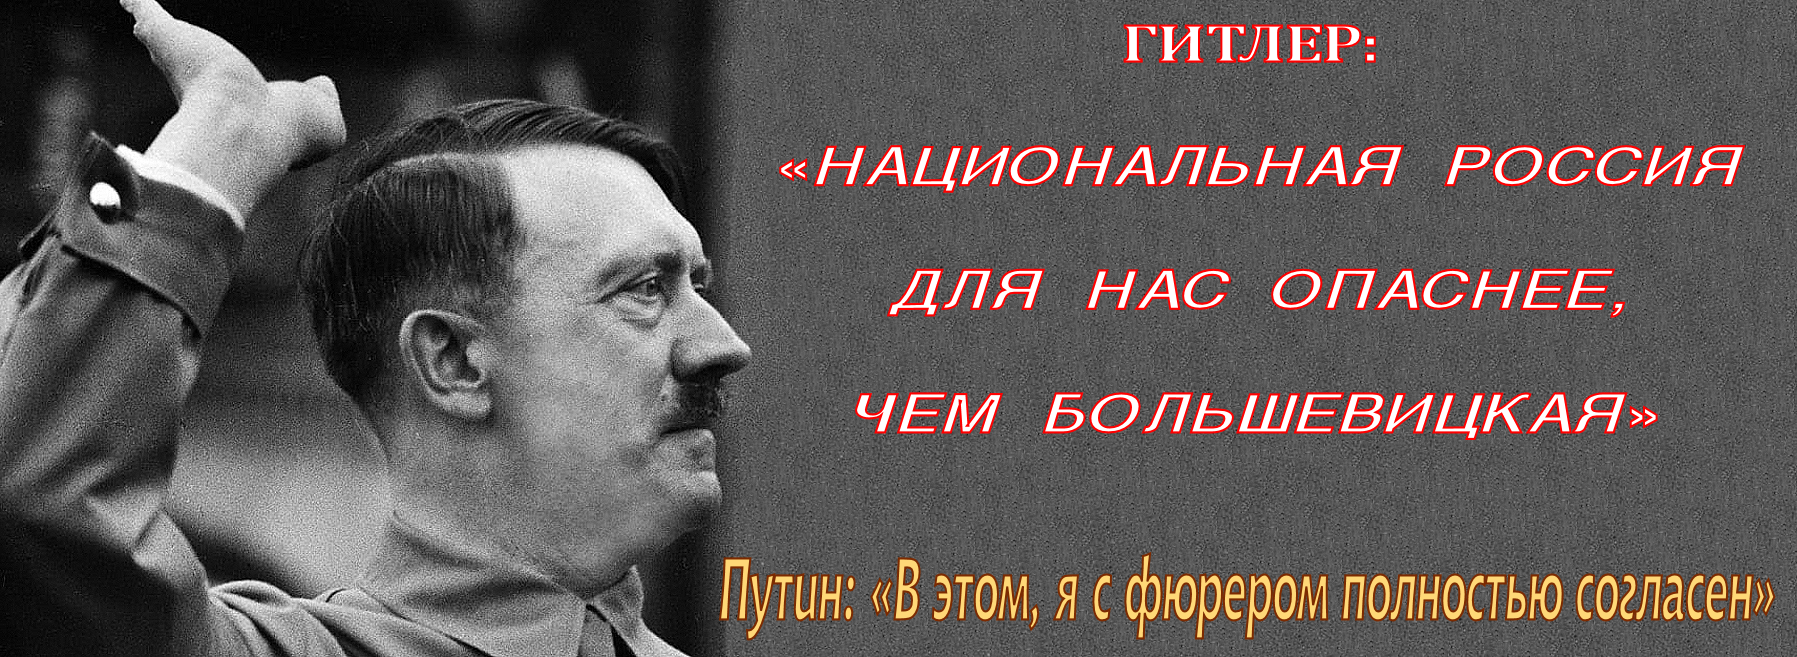 «Для «Национальной России» Путин опаснее Гитлера». — Жаль, что это понимает только криптофашист М.В. Назаров и ✠Мы-Фашисты-Мининисты✠. 